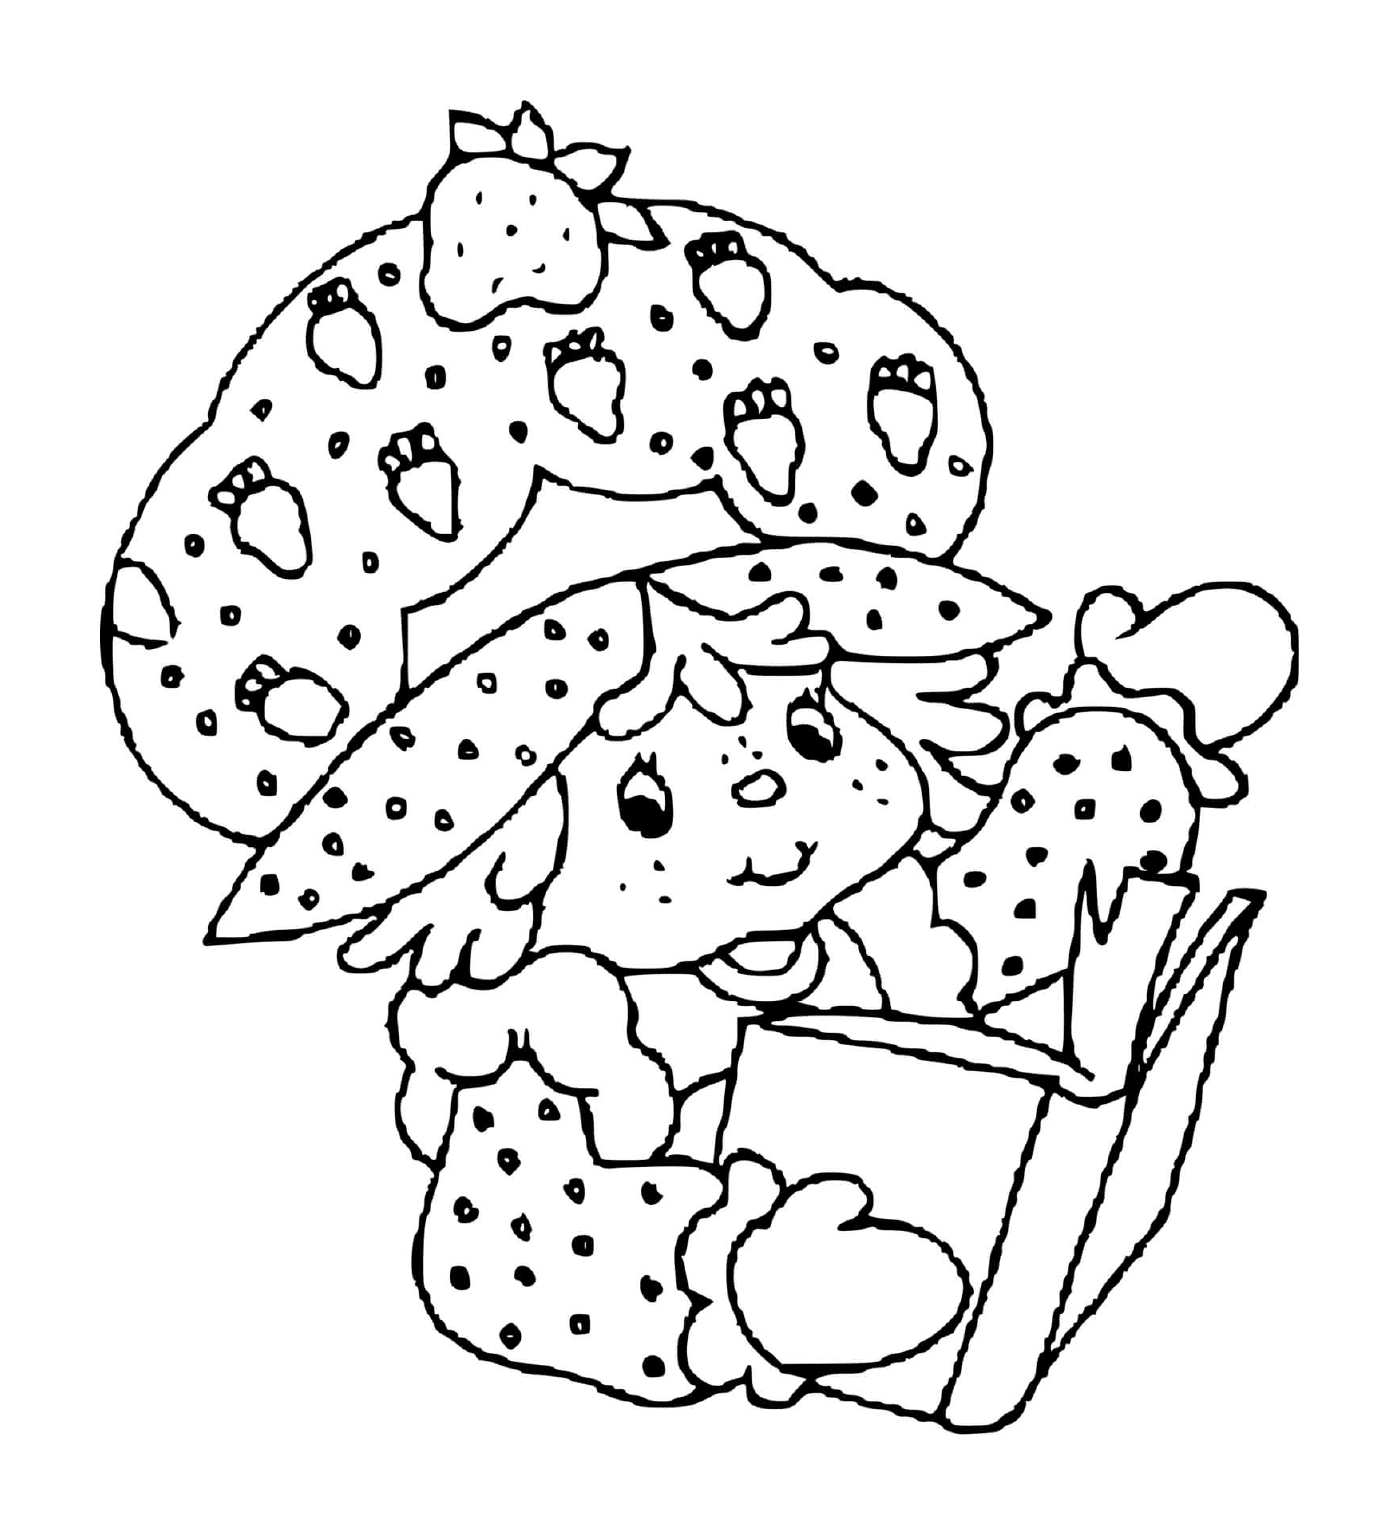  Charlotte mit Erdbeeren tauchte in einem fesselnden Buch 